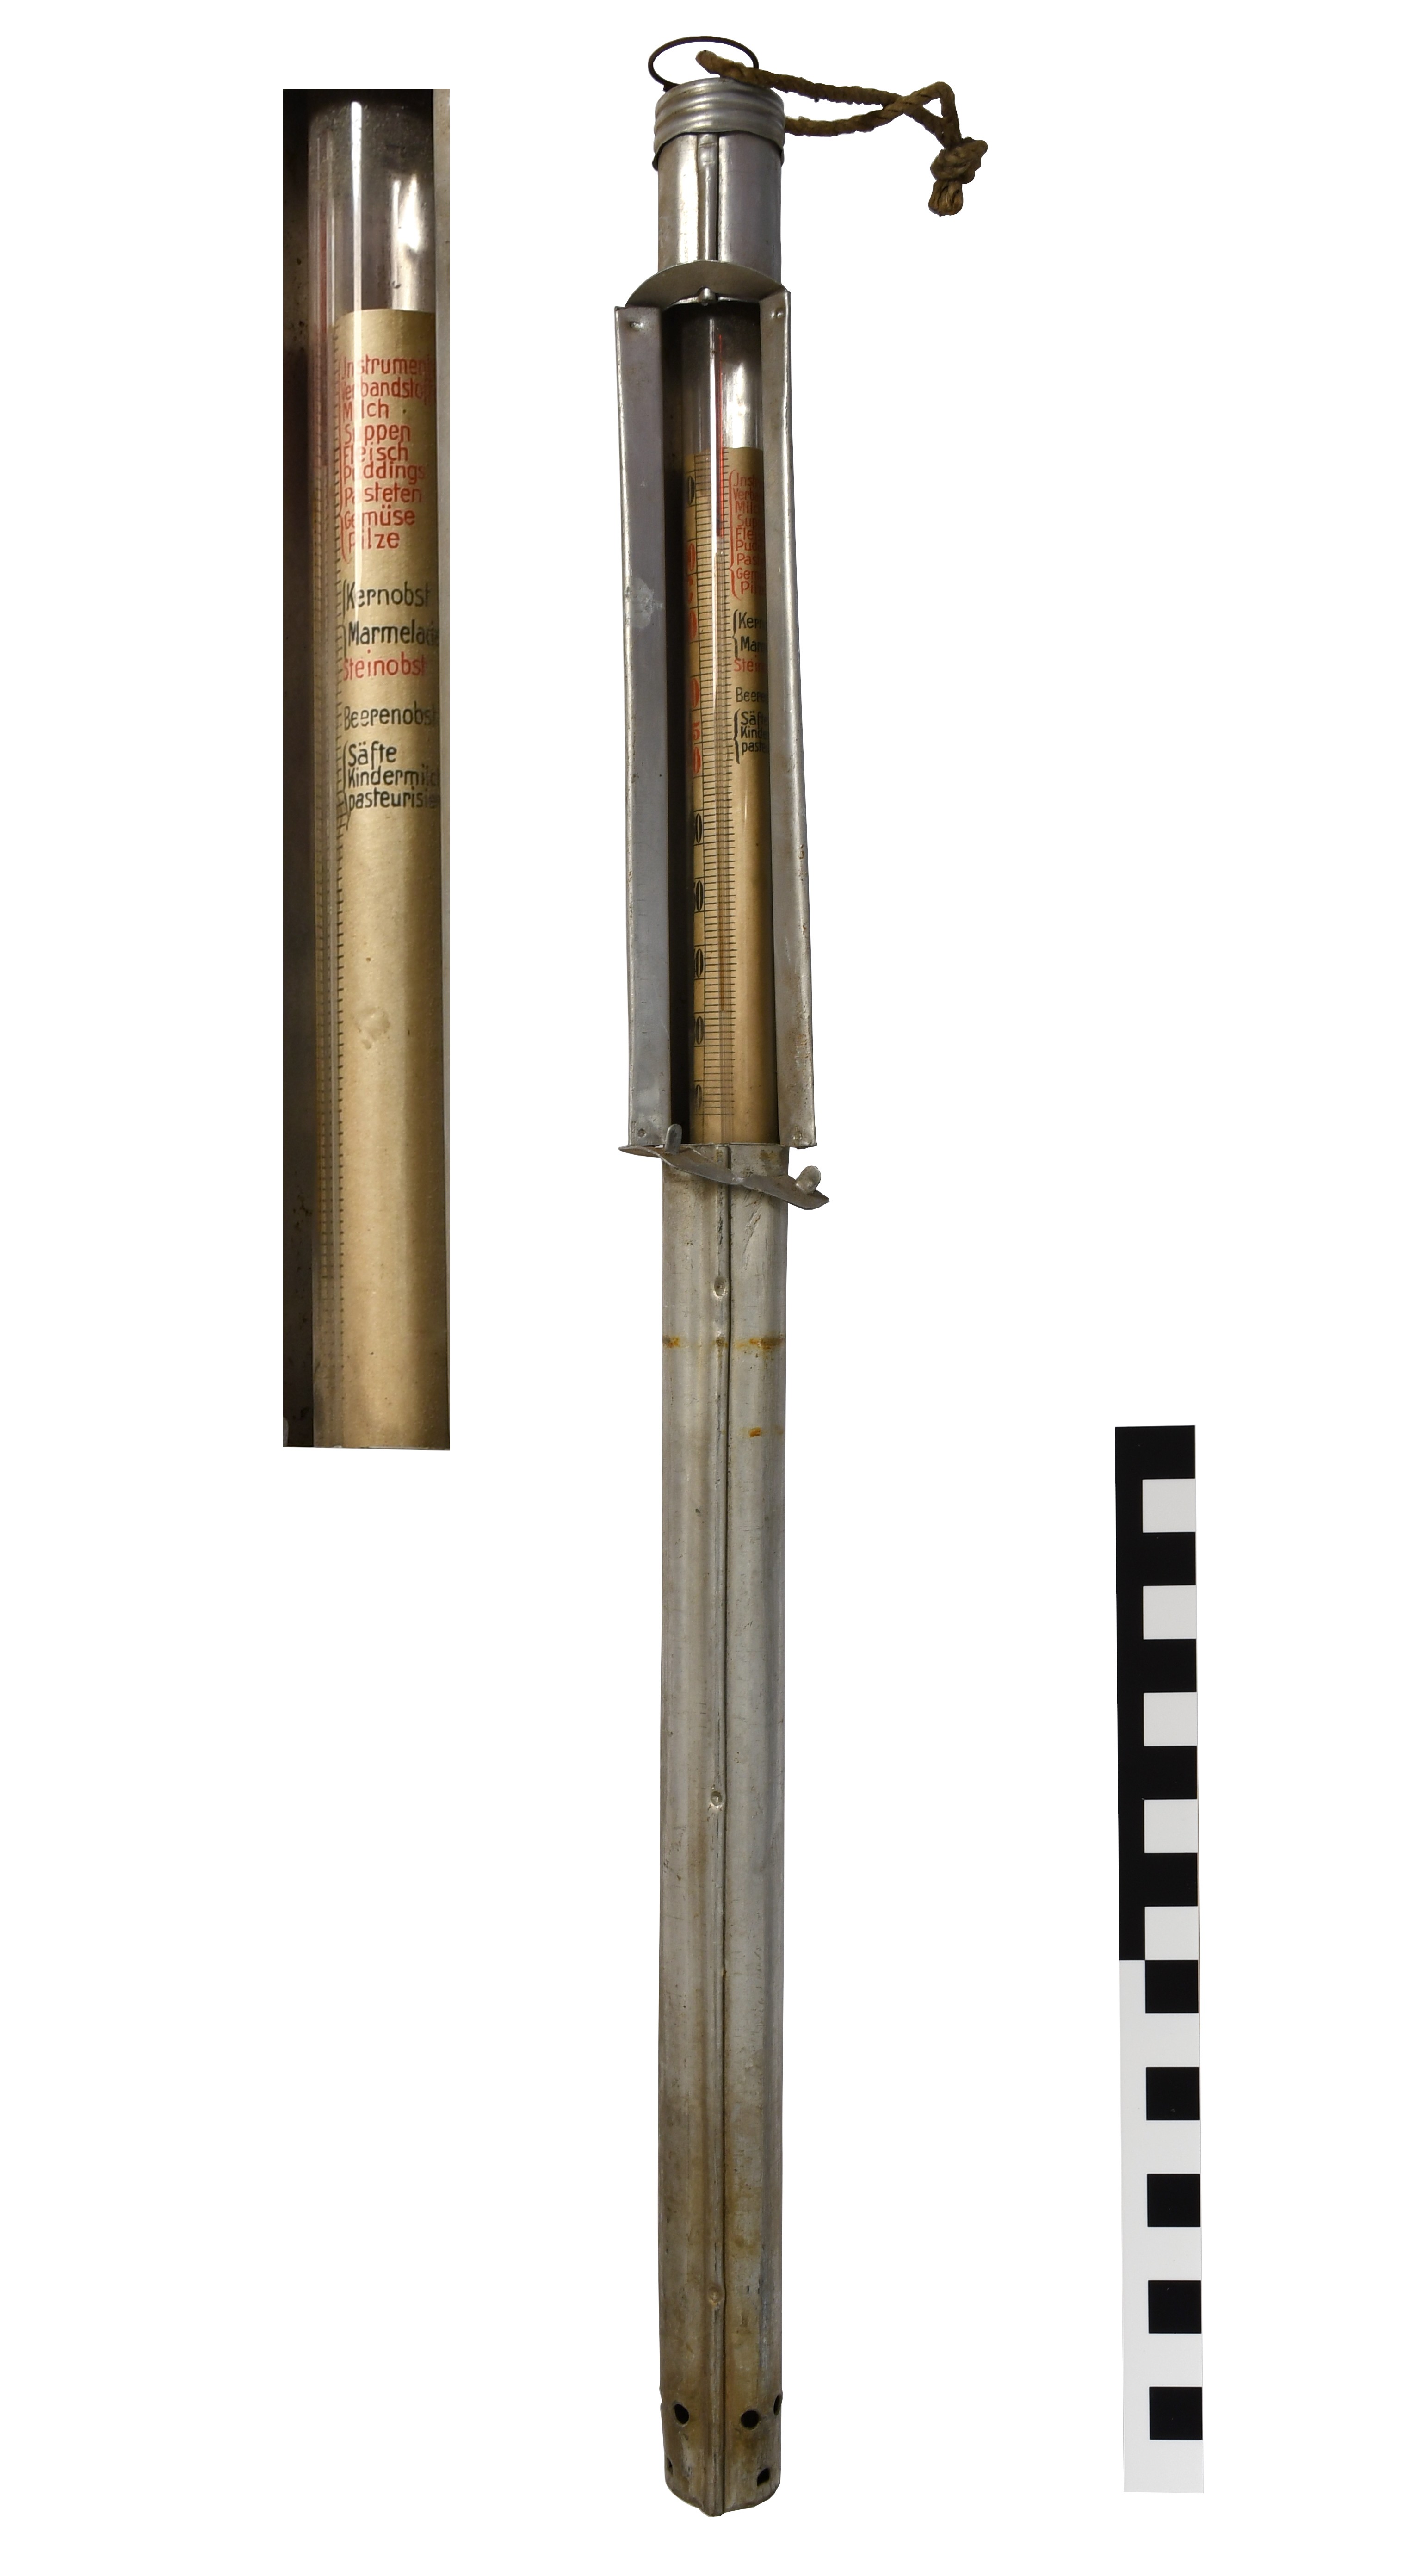 Sterilisier - Thermometer aus Aluminium (Kulturzentrum Sinsteden, Rhein-Kreis-Neuss CC BY-NC-ND)